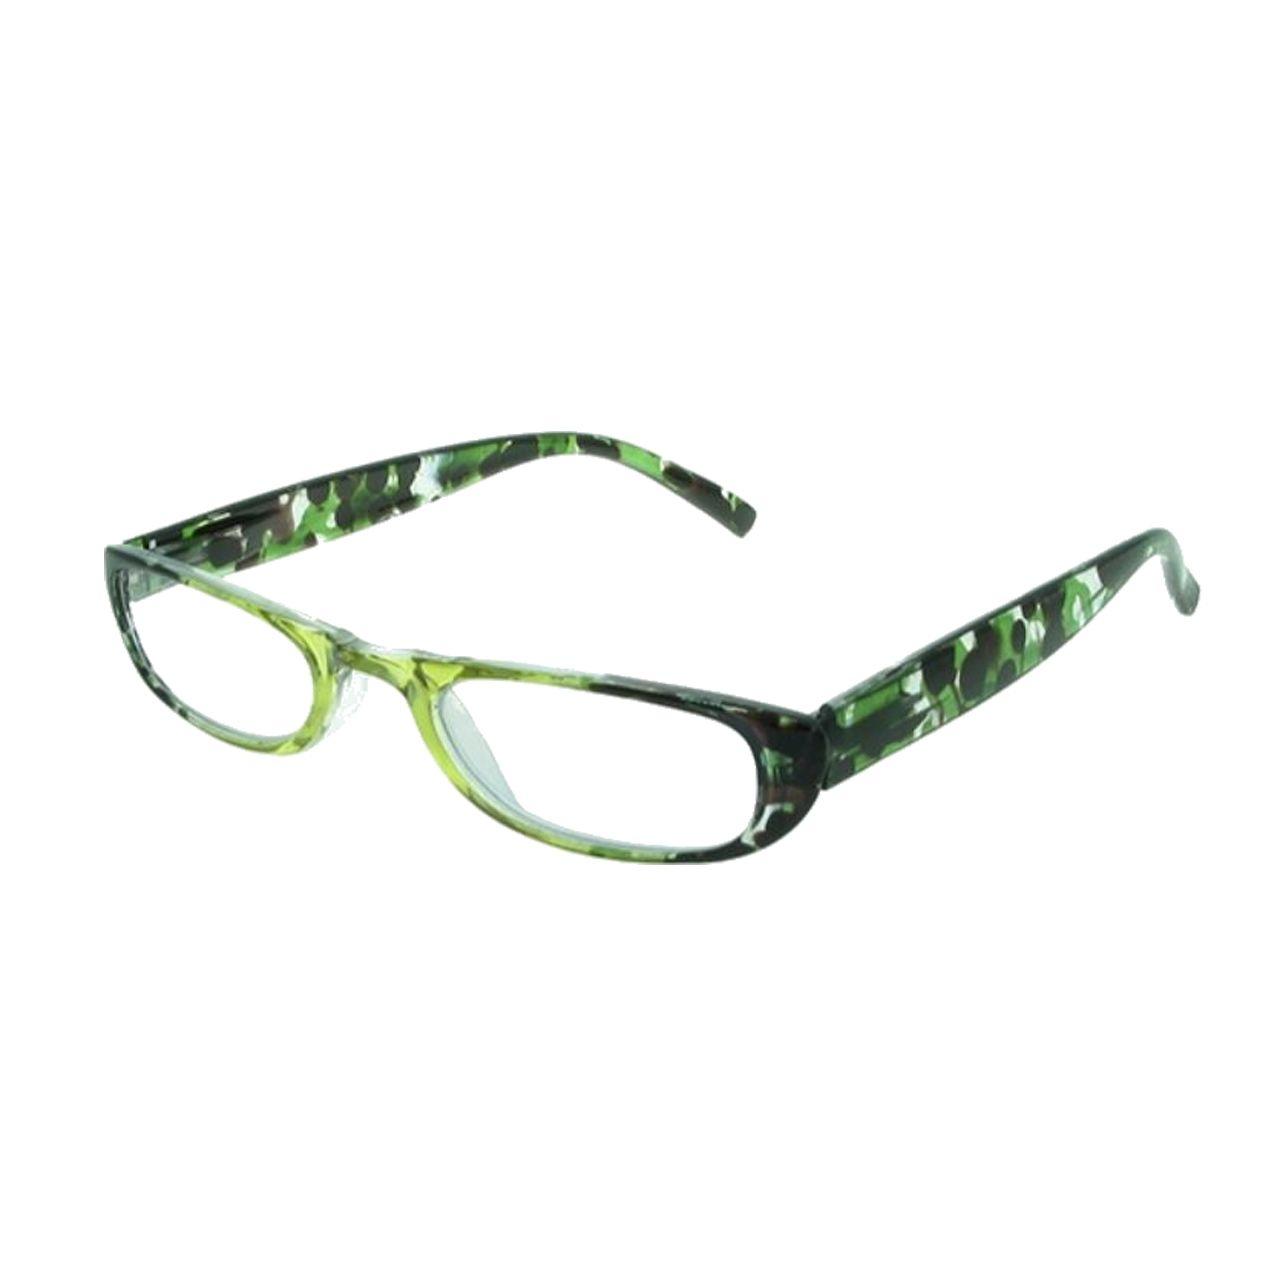 Slimline Reading Glasses Peppercorn Green